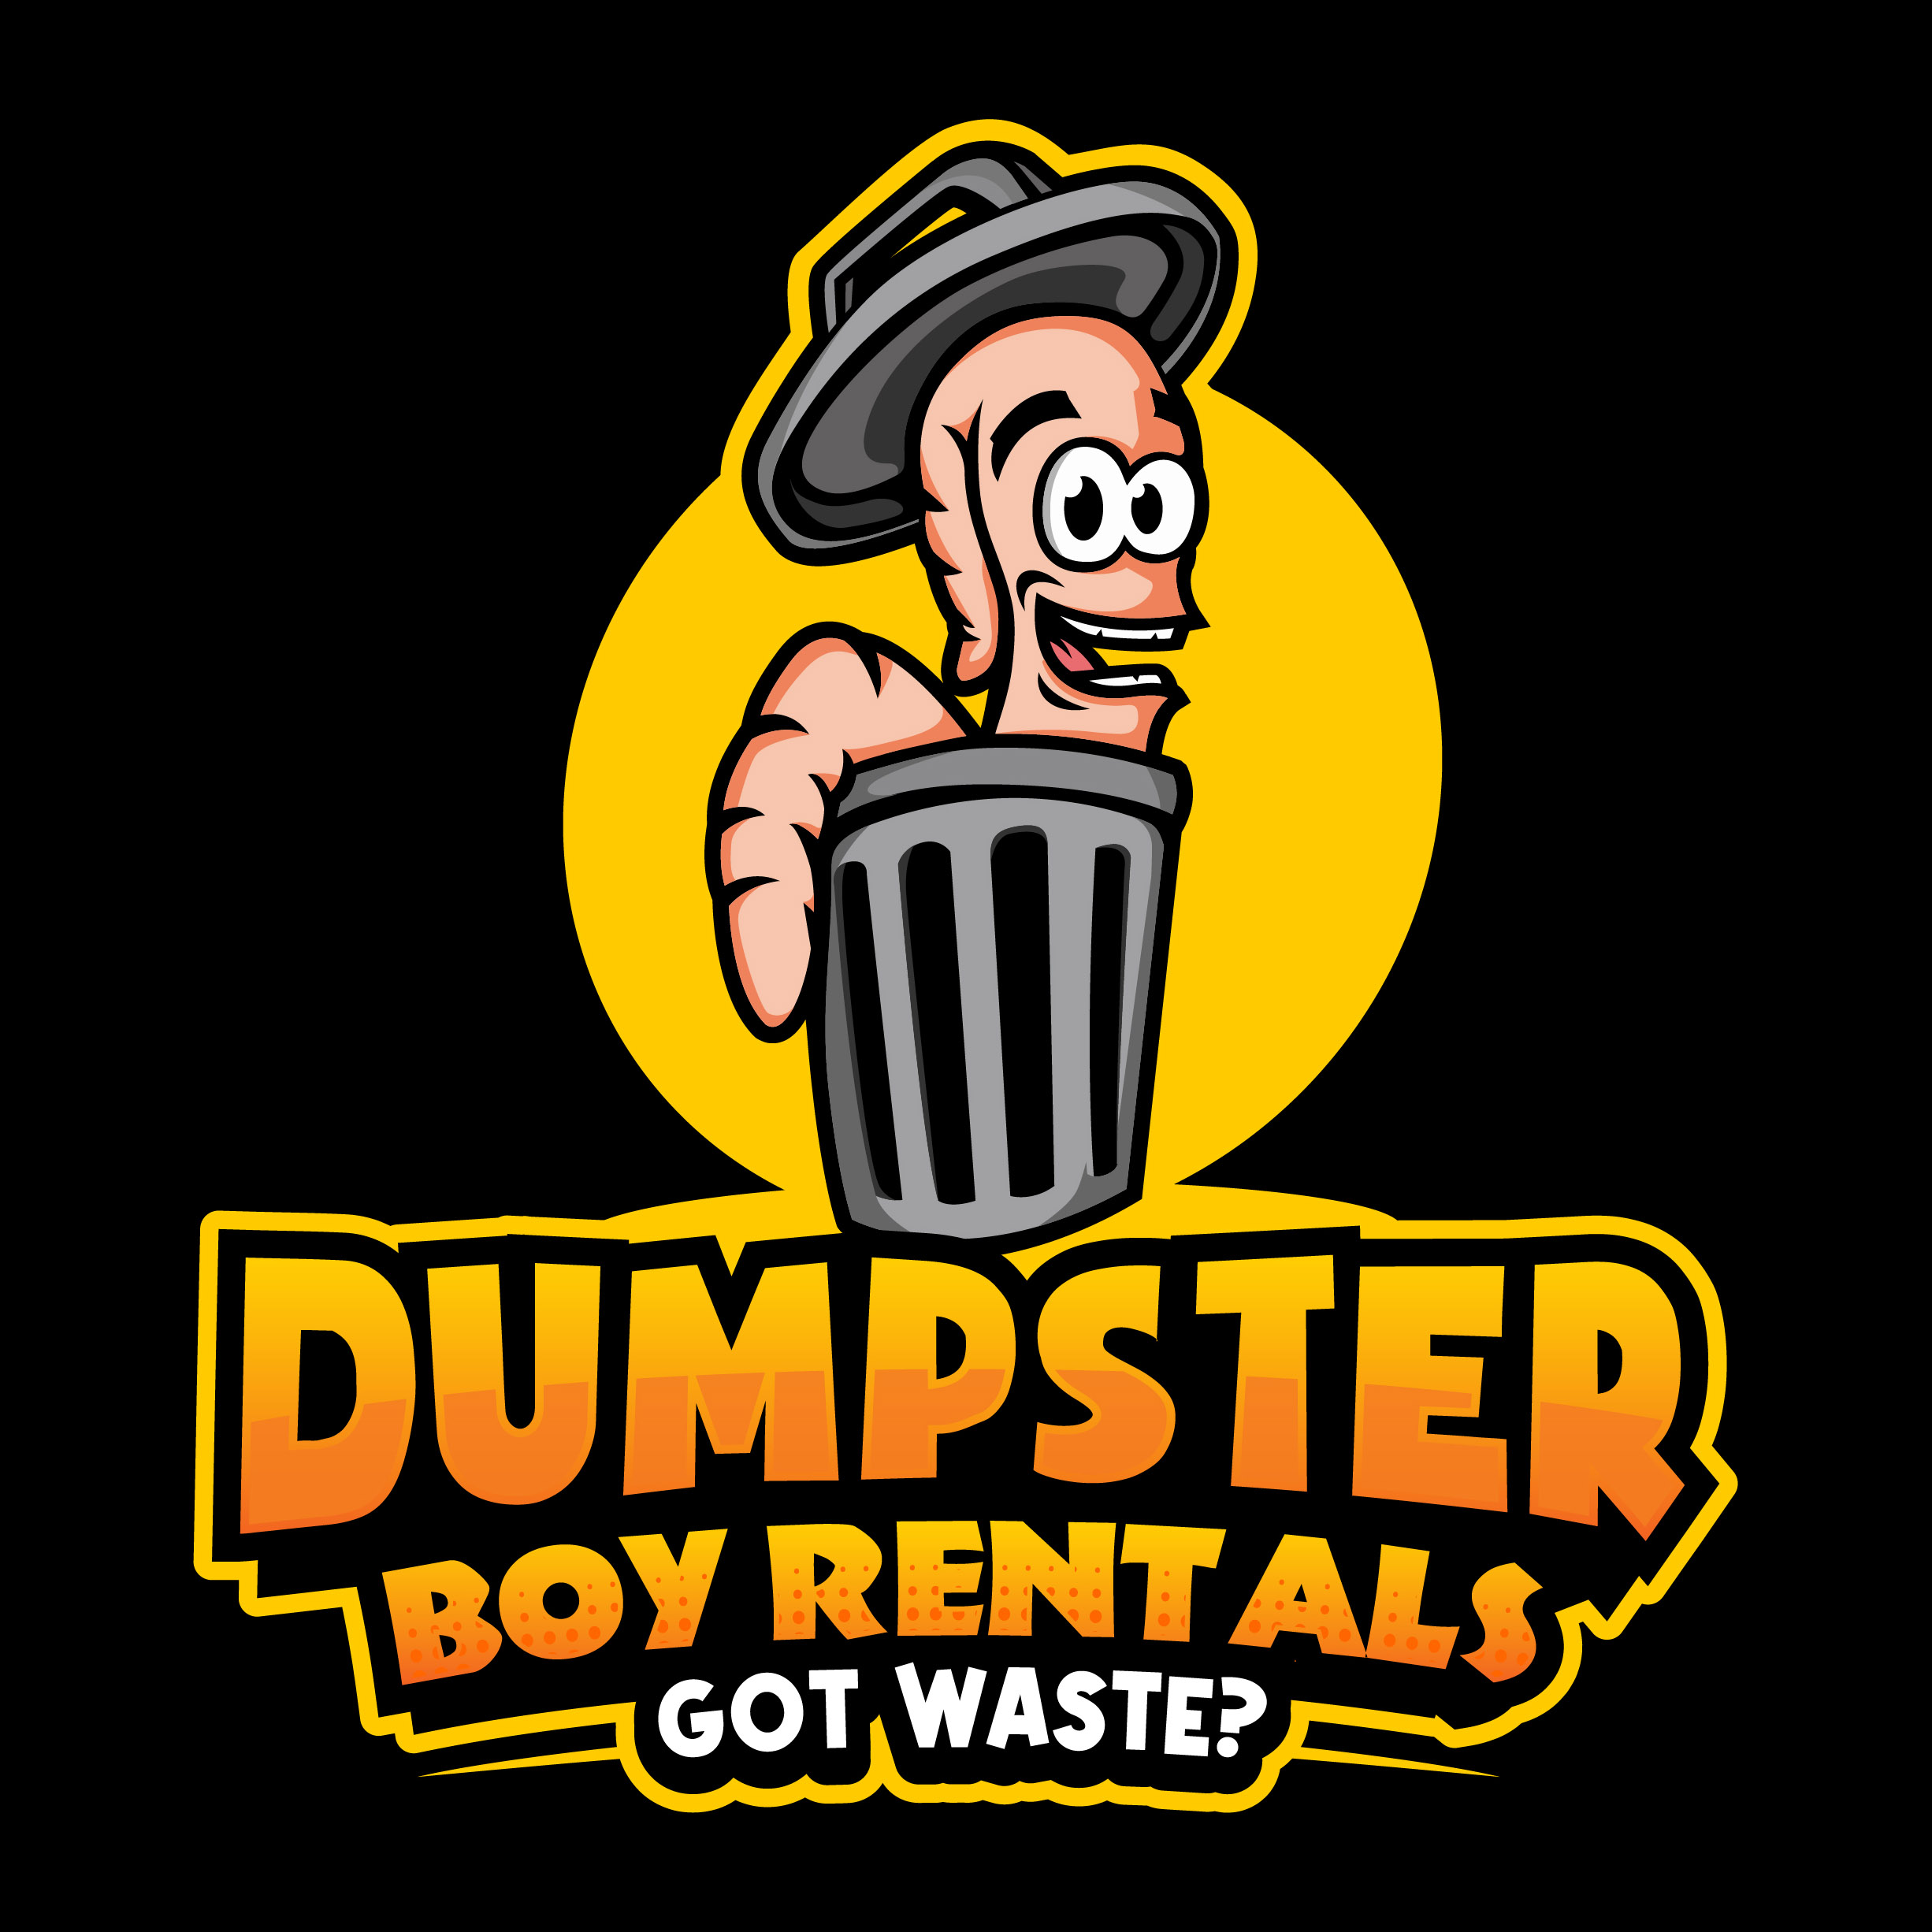 Dumpster Boy Rentals – Got Waste?